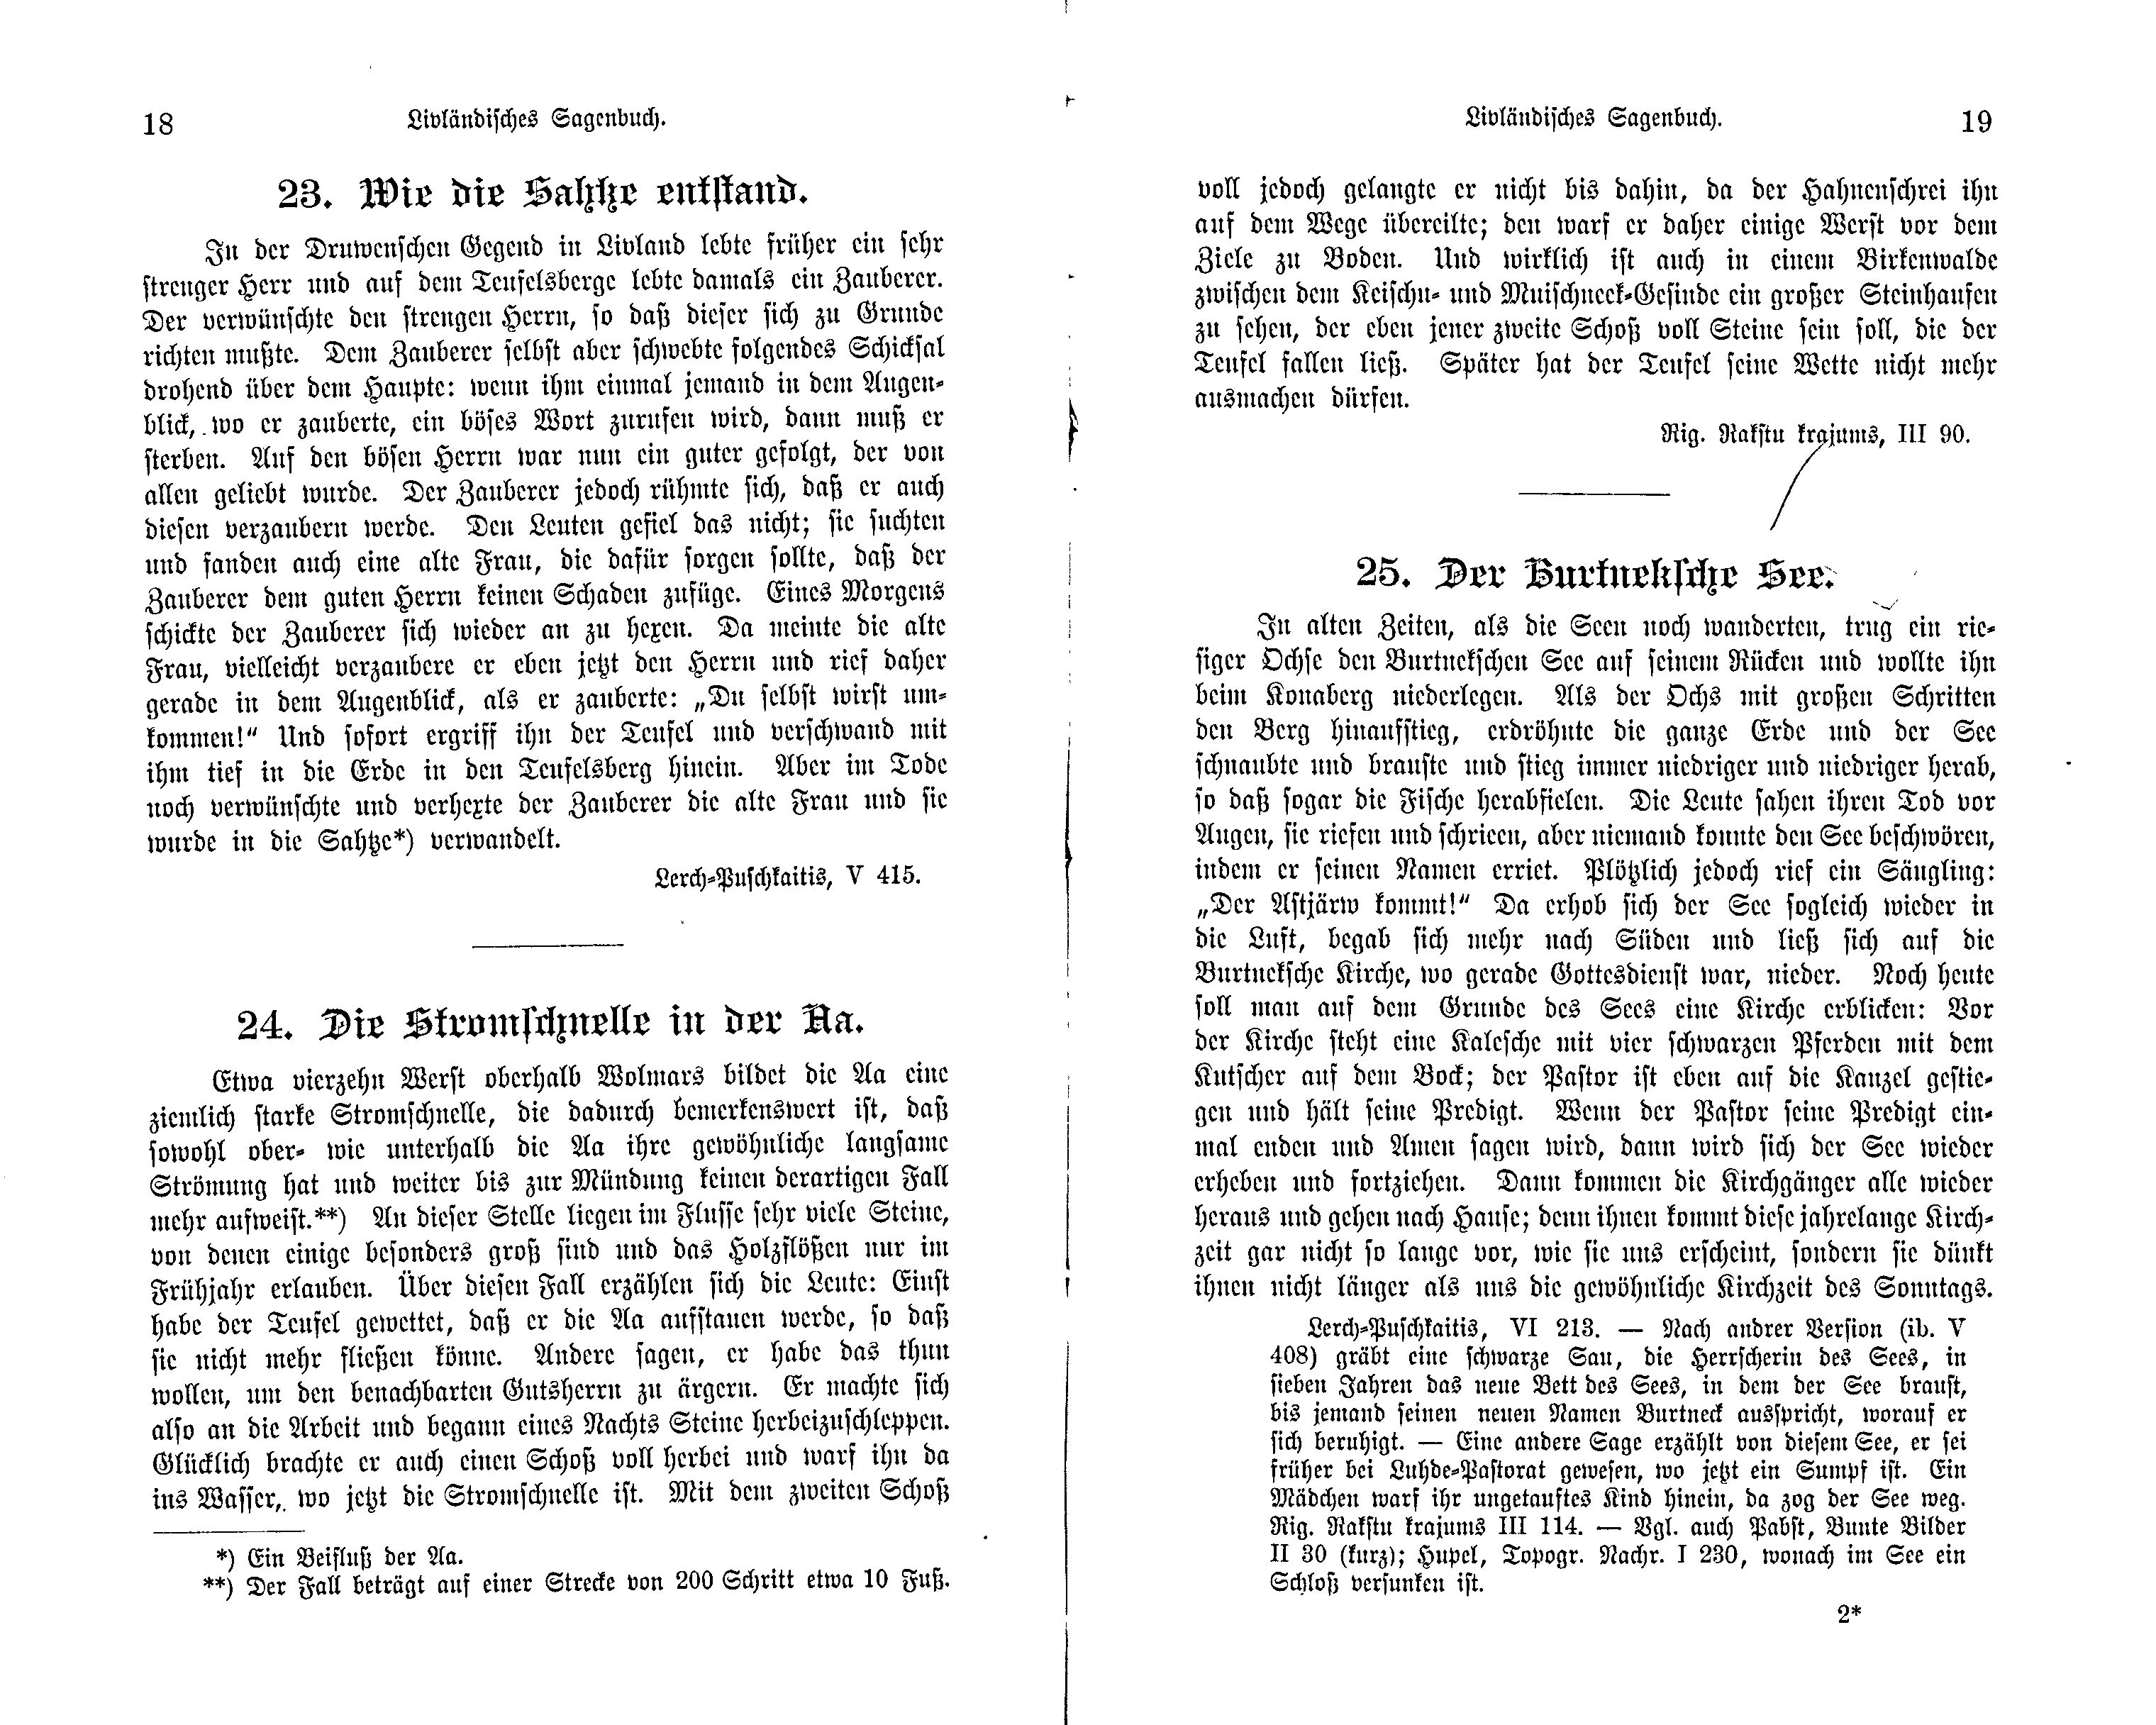 Die Stromschnelle in der Aa (1897) | 1. (18-19) Основной текст